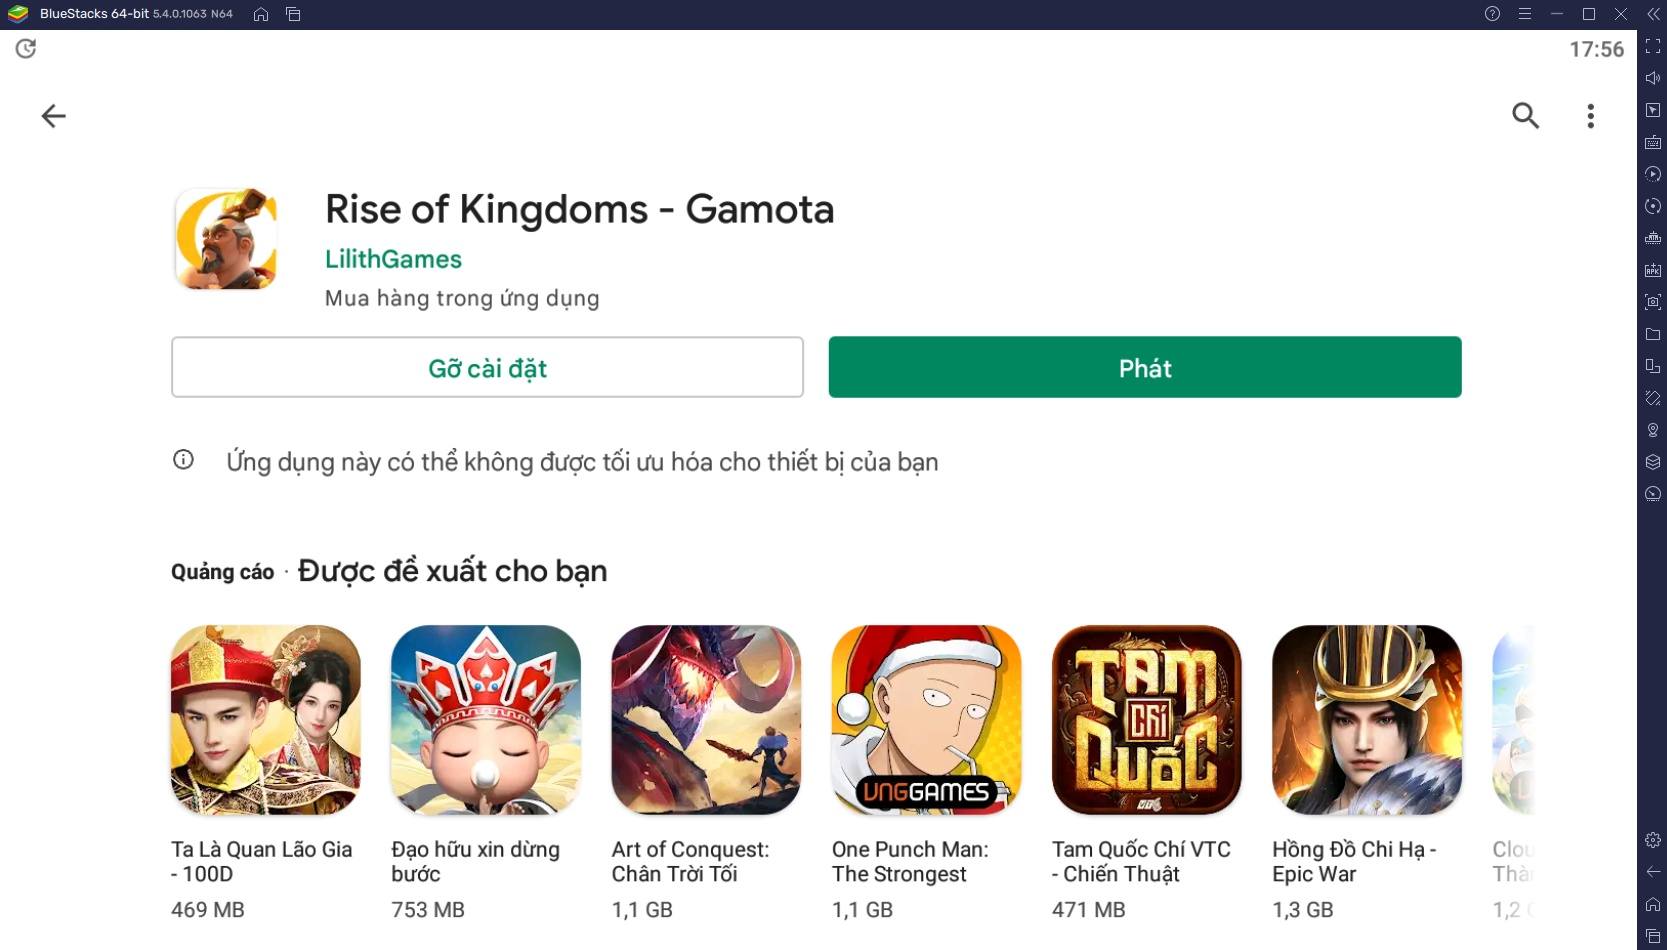 Trải nghiệm Rise of Kingdoms - Gamota trên PC với BlueStacks